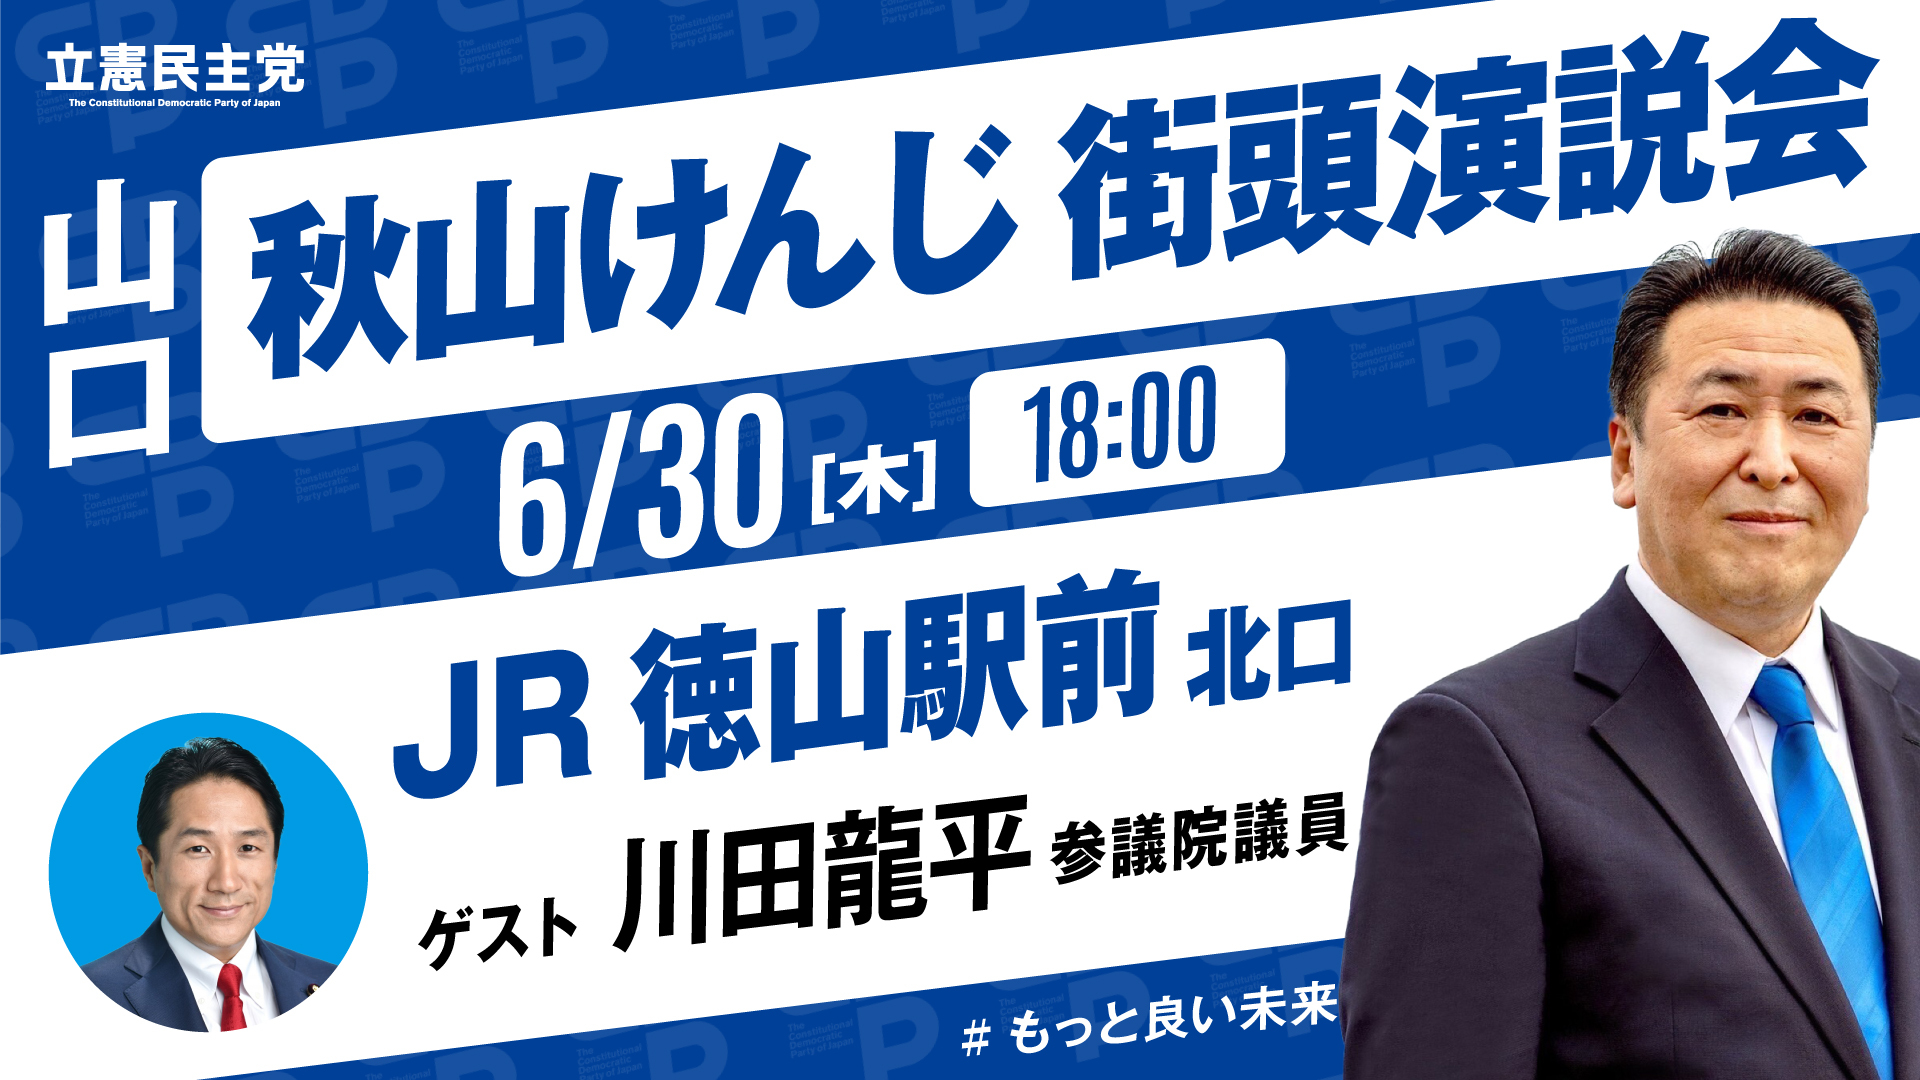 【お知らせ】6/30川田参議院議員と徳山駅前で街頭演説